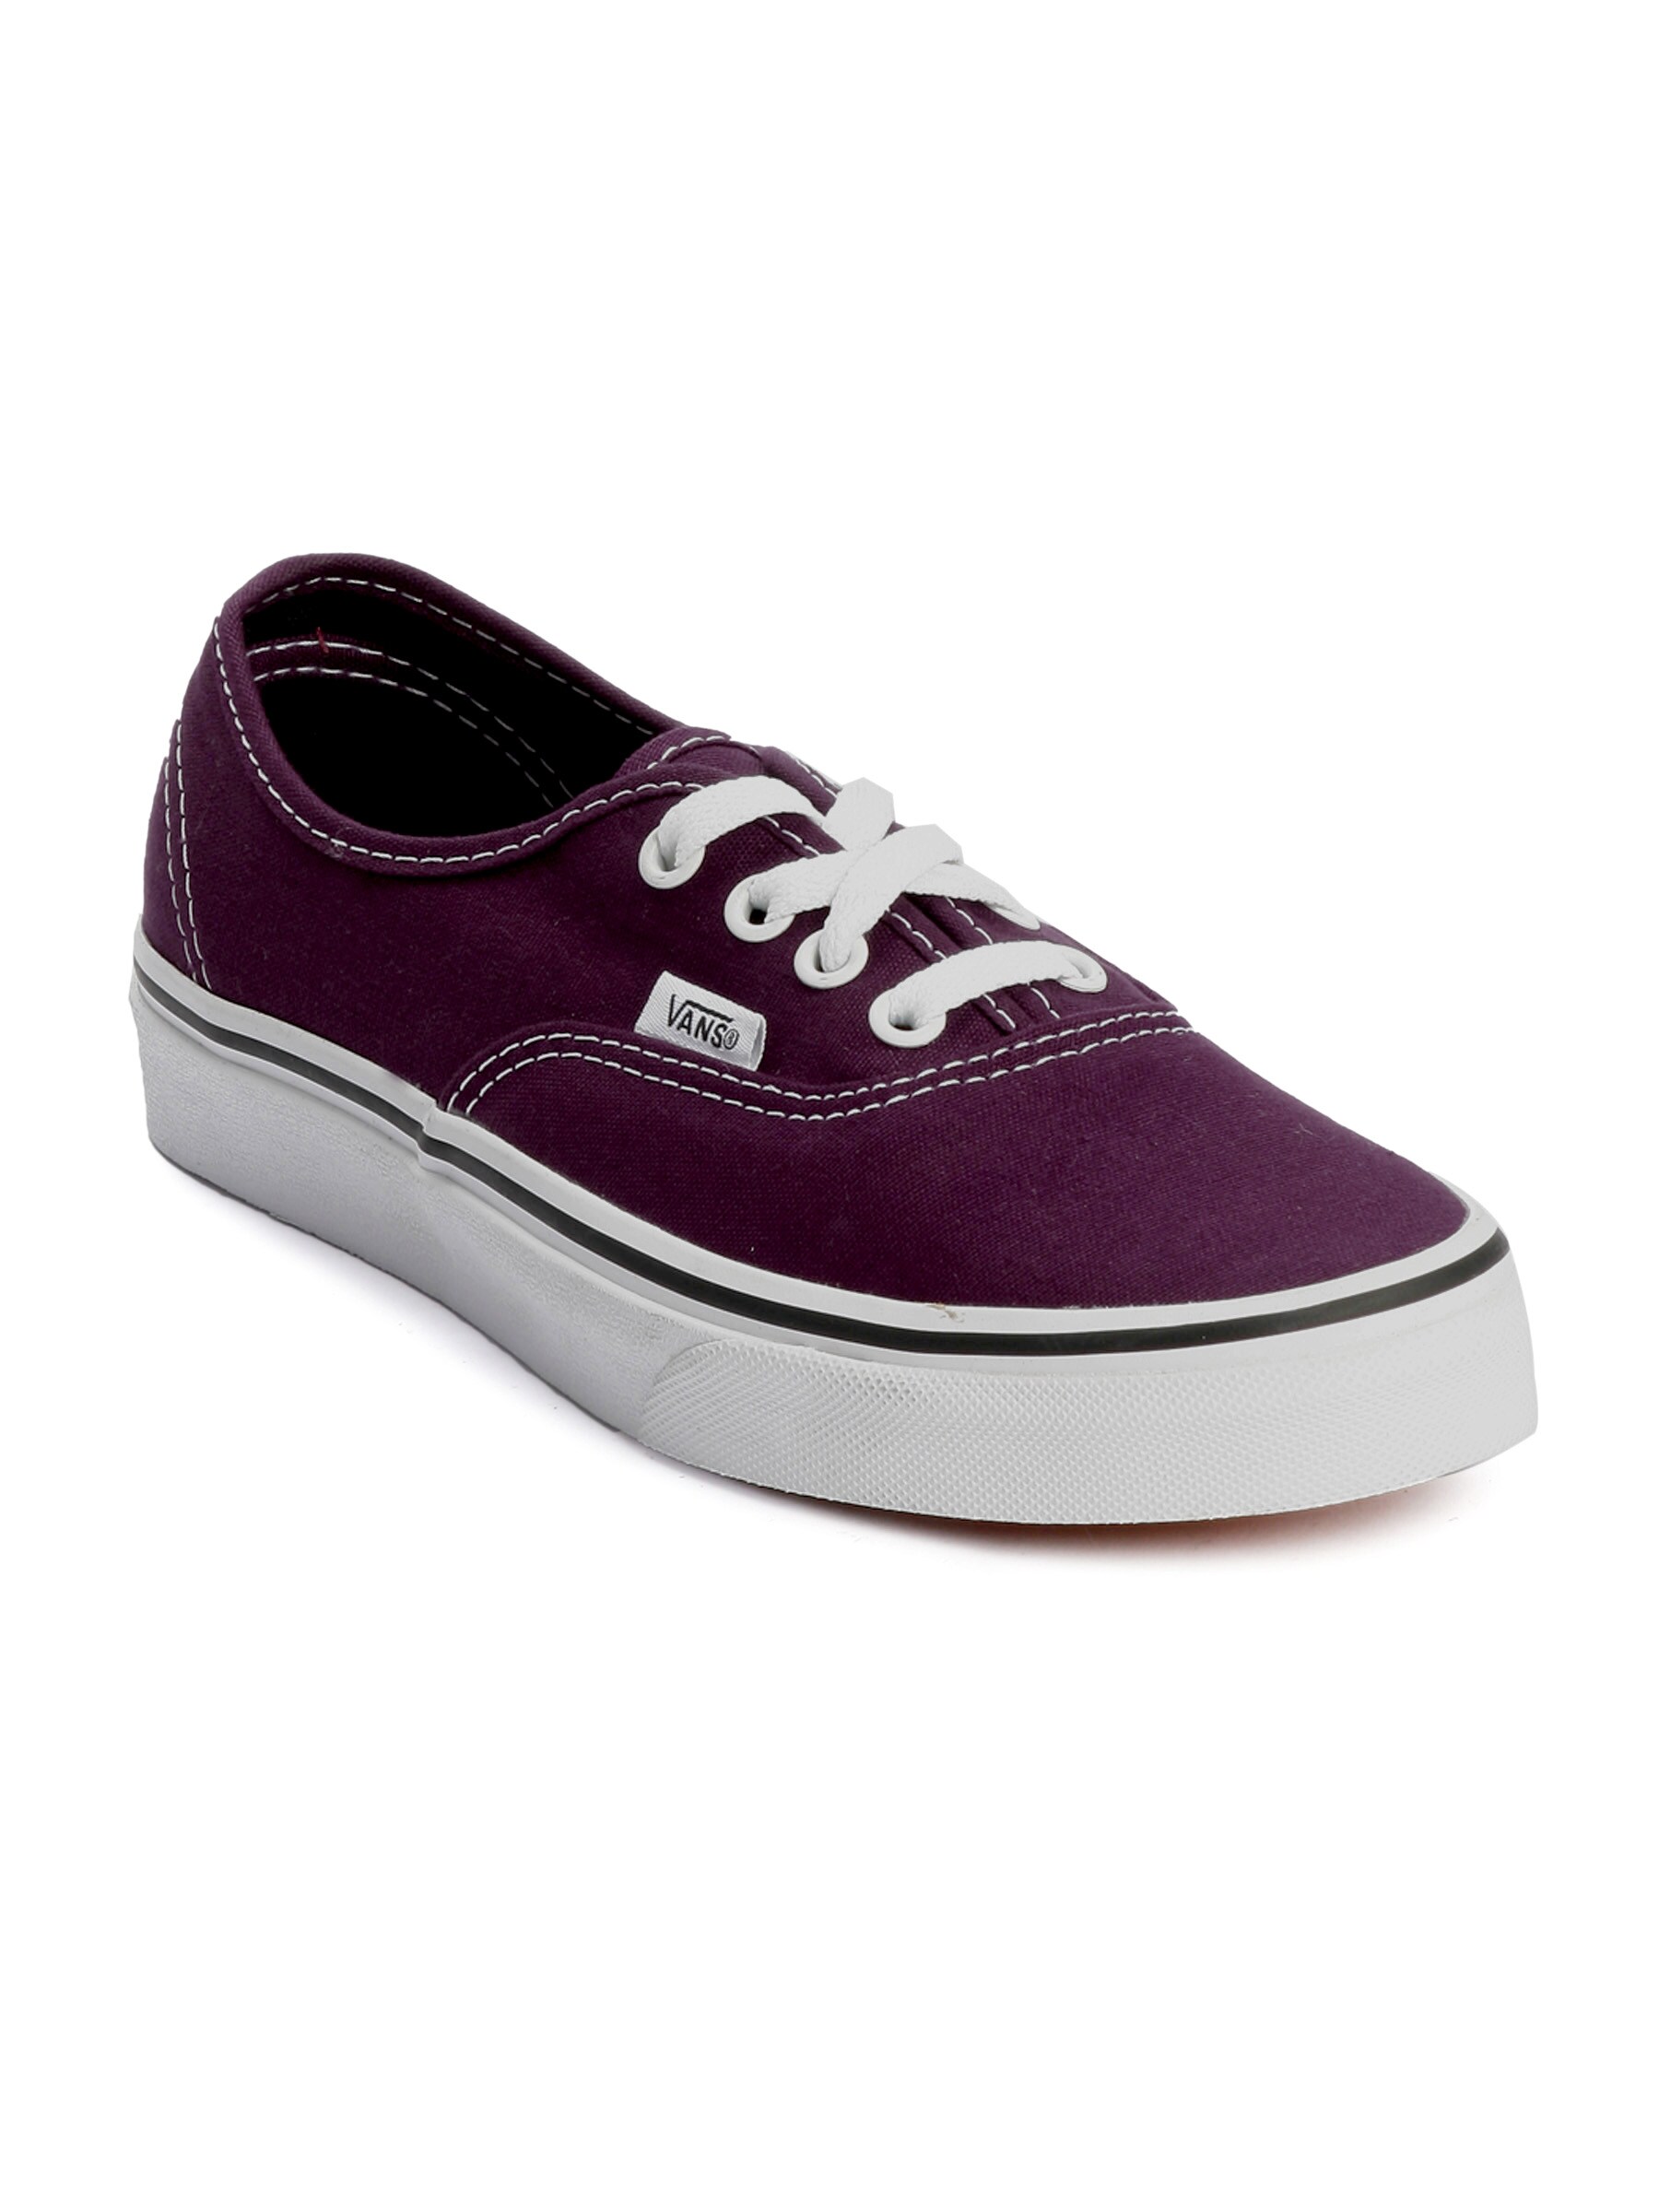 Vans unisex Authentic Purple Casual Shoes